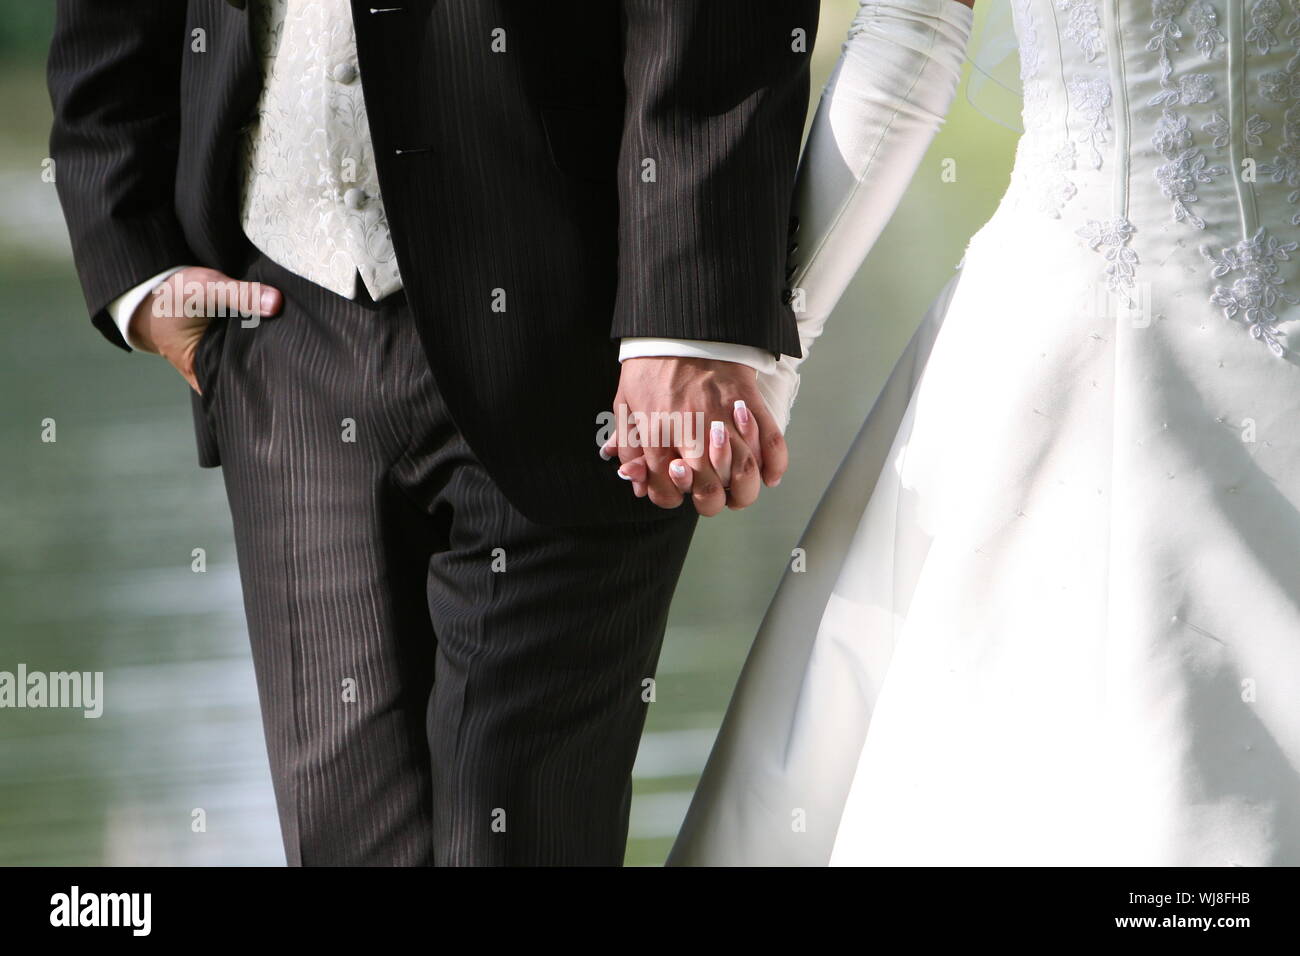 Brautpaar-Hand in Hand, nur die Hände sind zu sehen Stock Photo